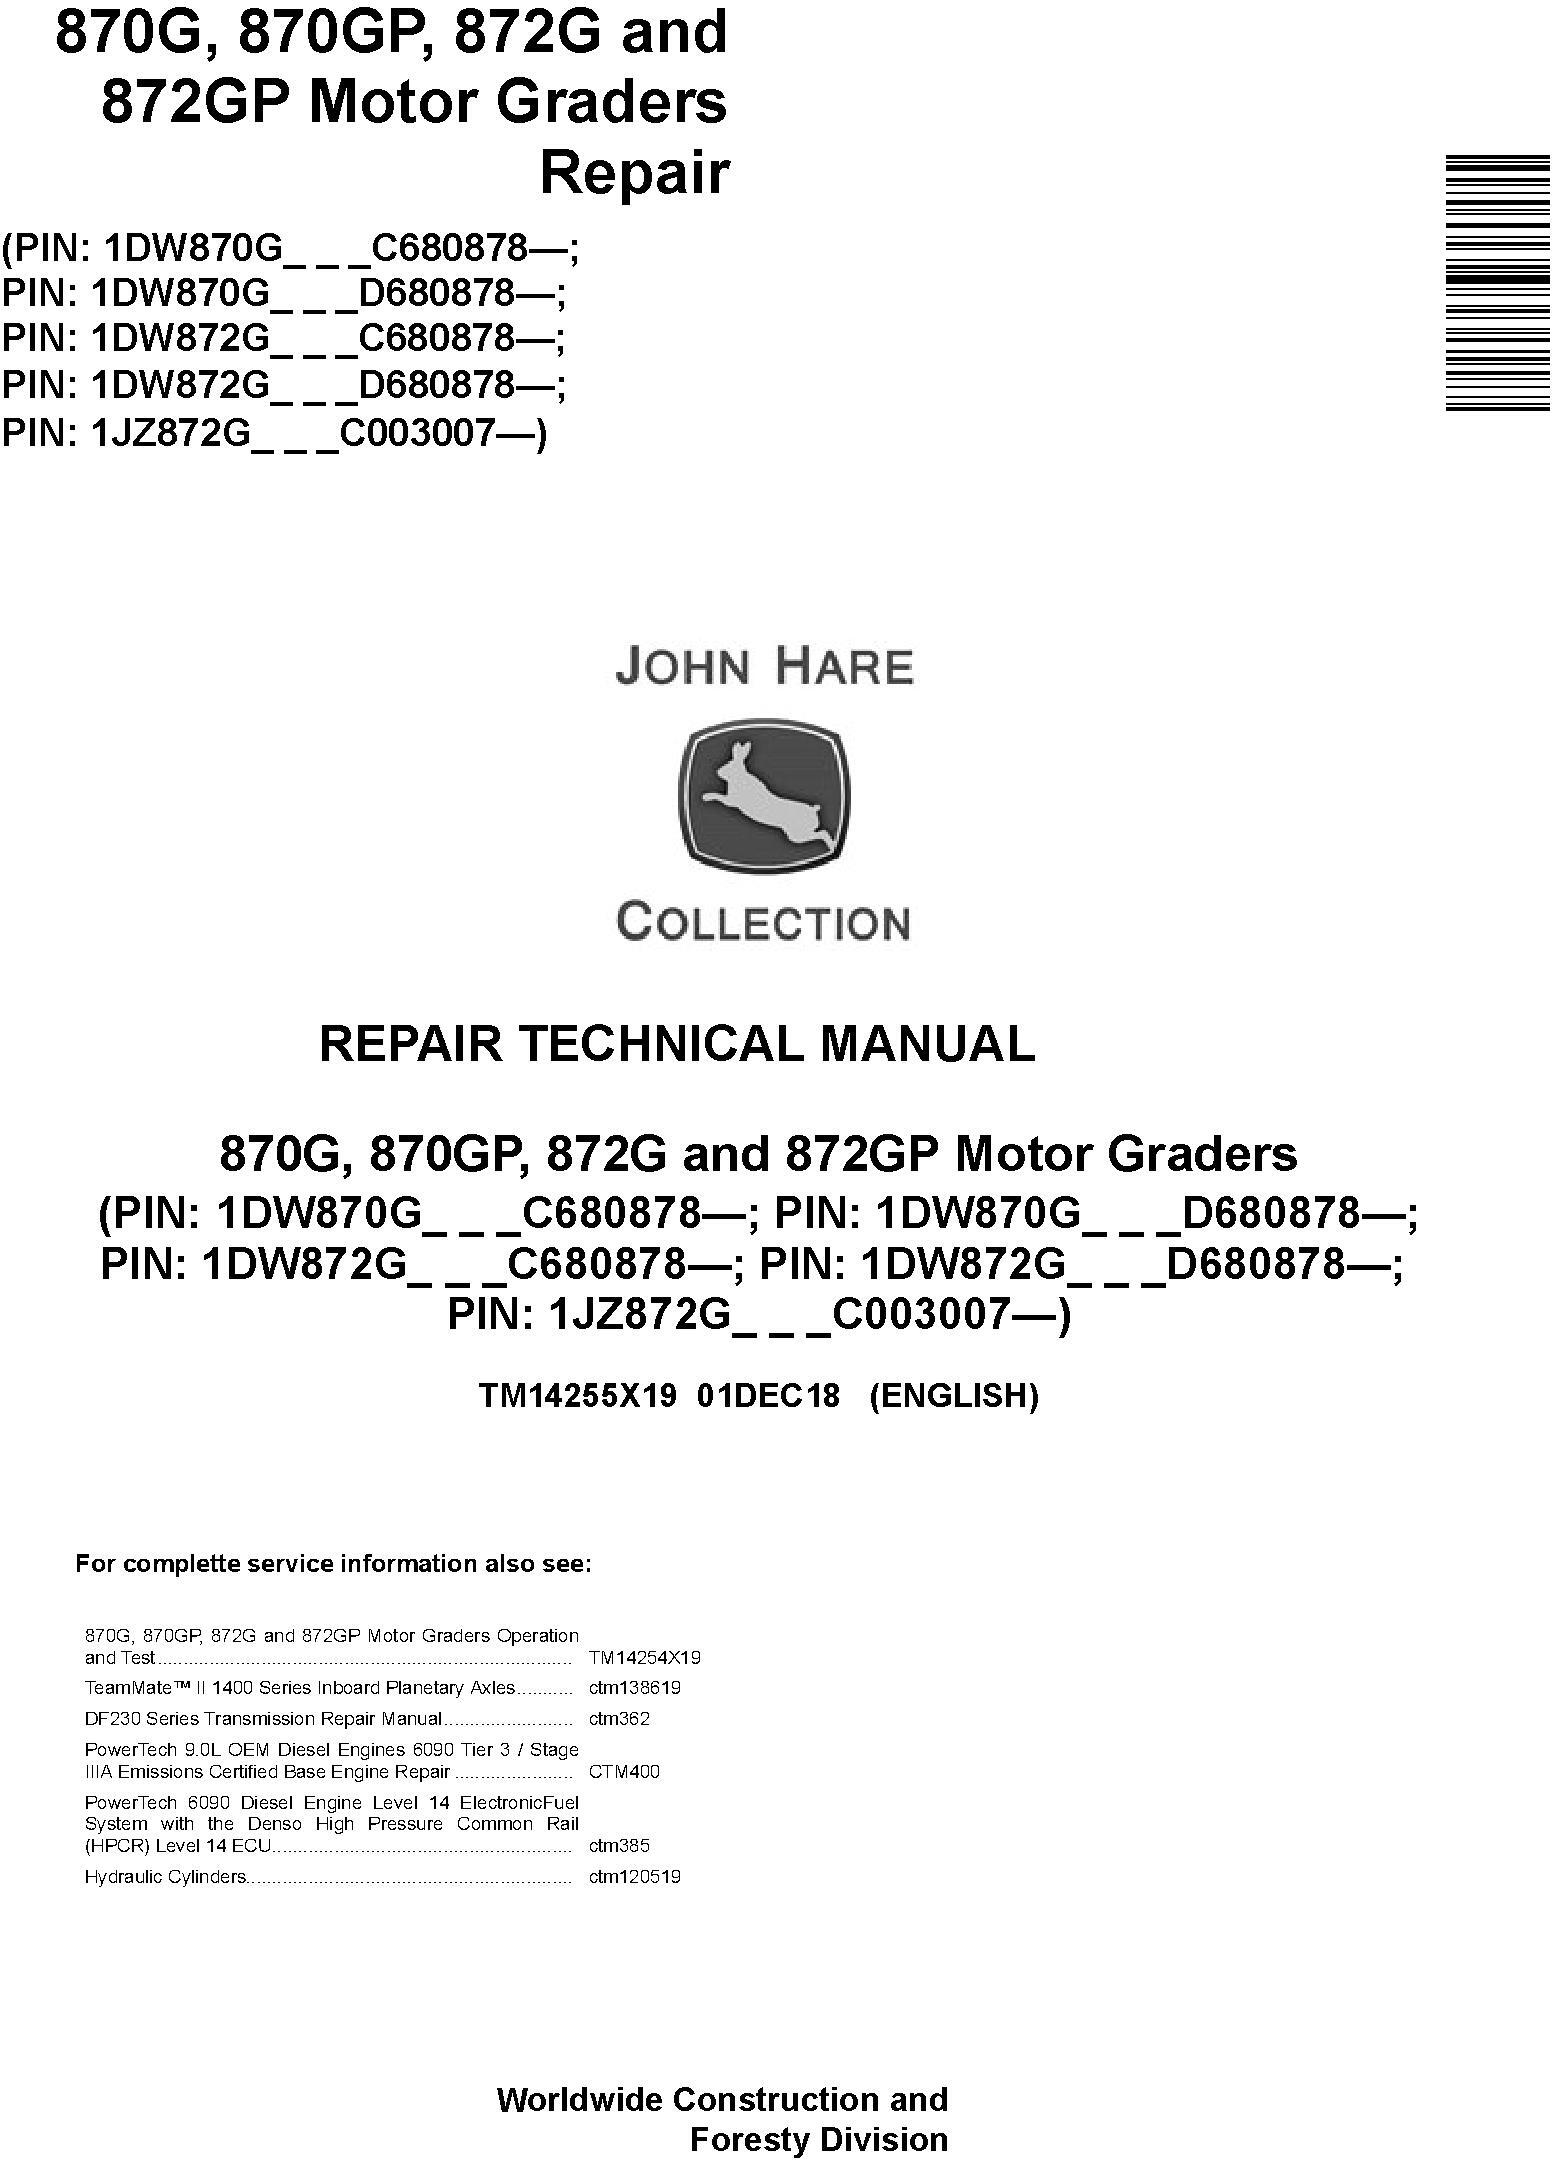 John Deere 870G, 870GP, 872G, 872GP (SN. C680878-,D680878-) Motor Graders Repair Manual (TM14255X19) - 19011